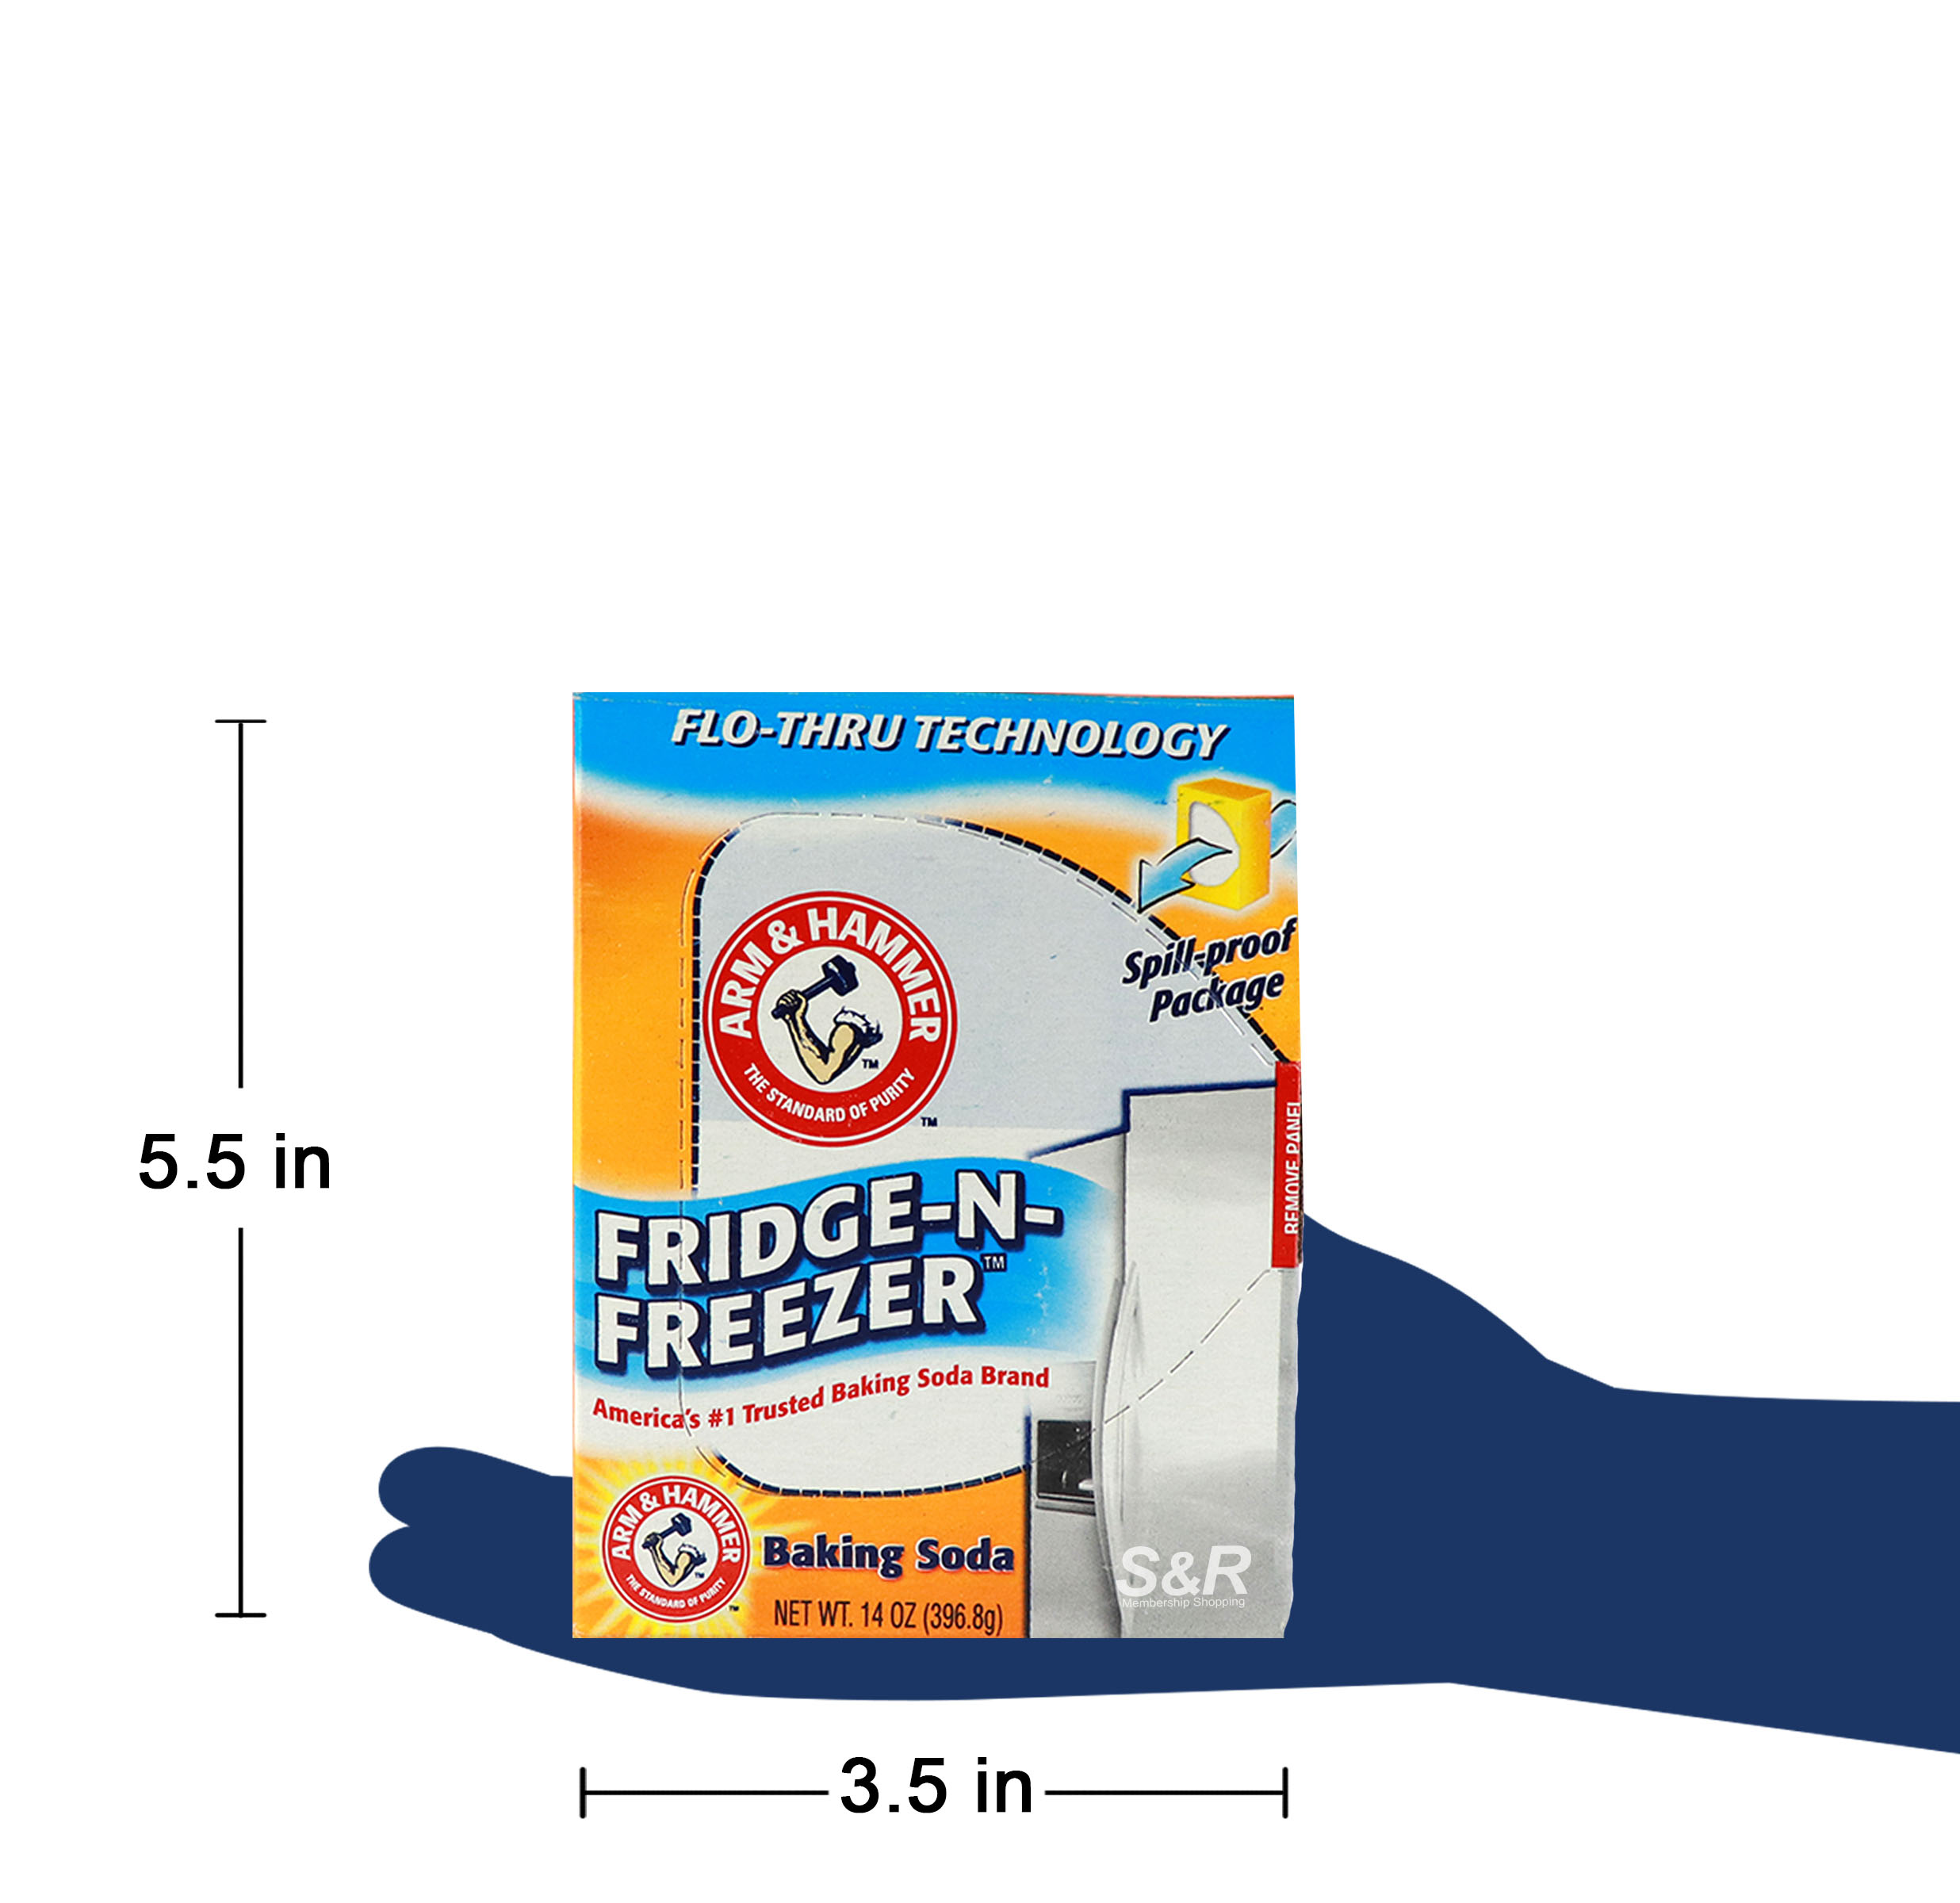 Fridge-N-Freezer